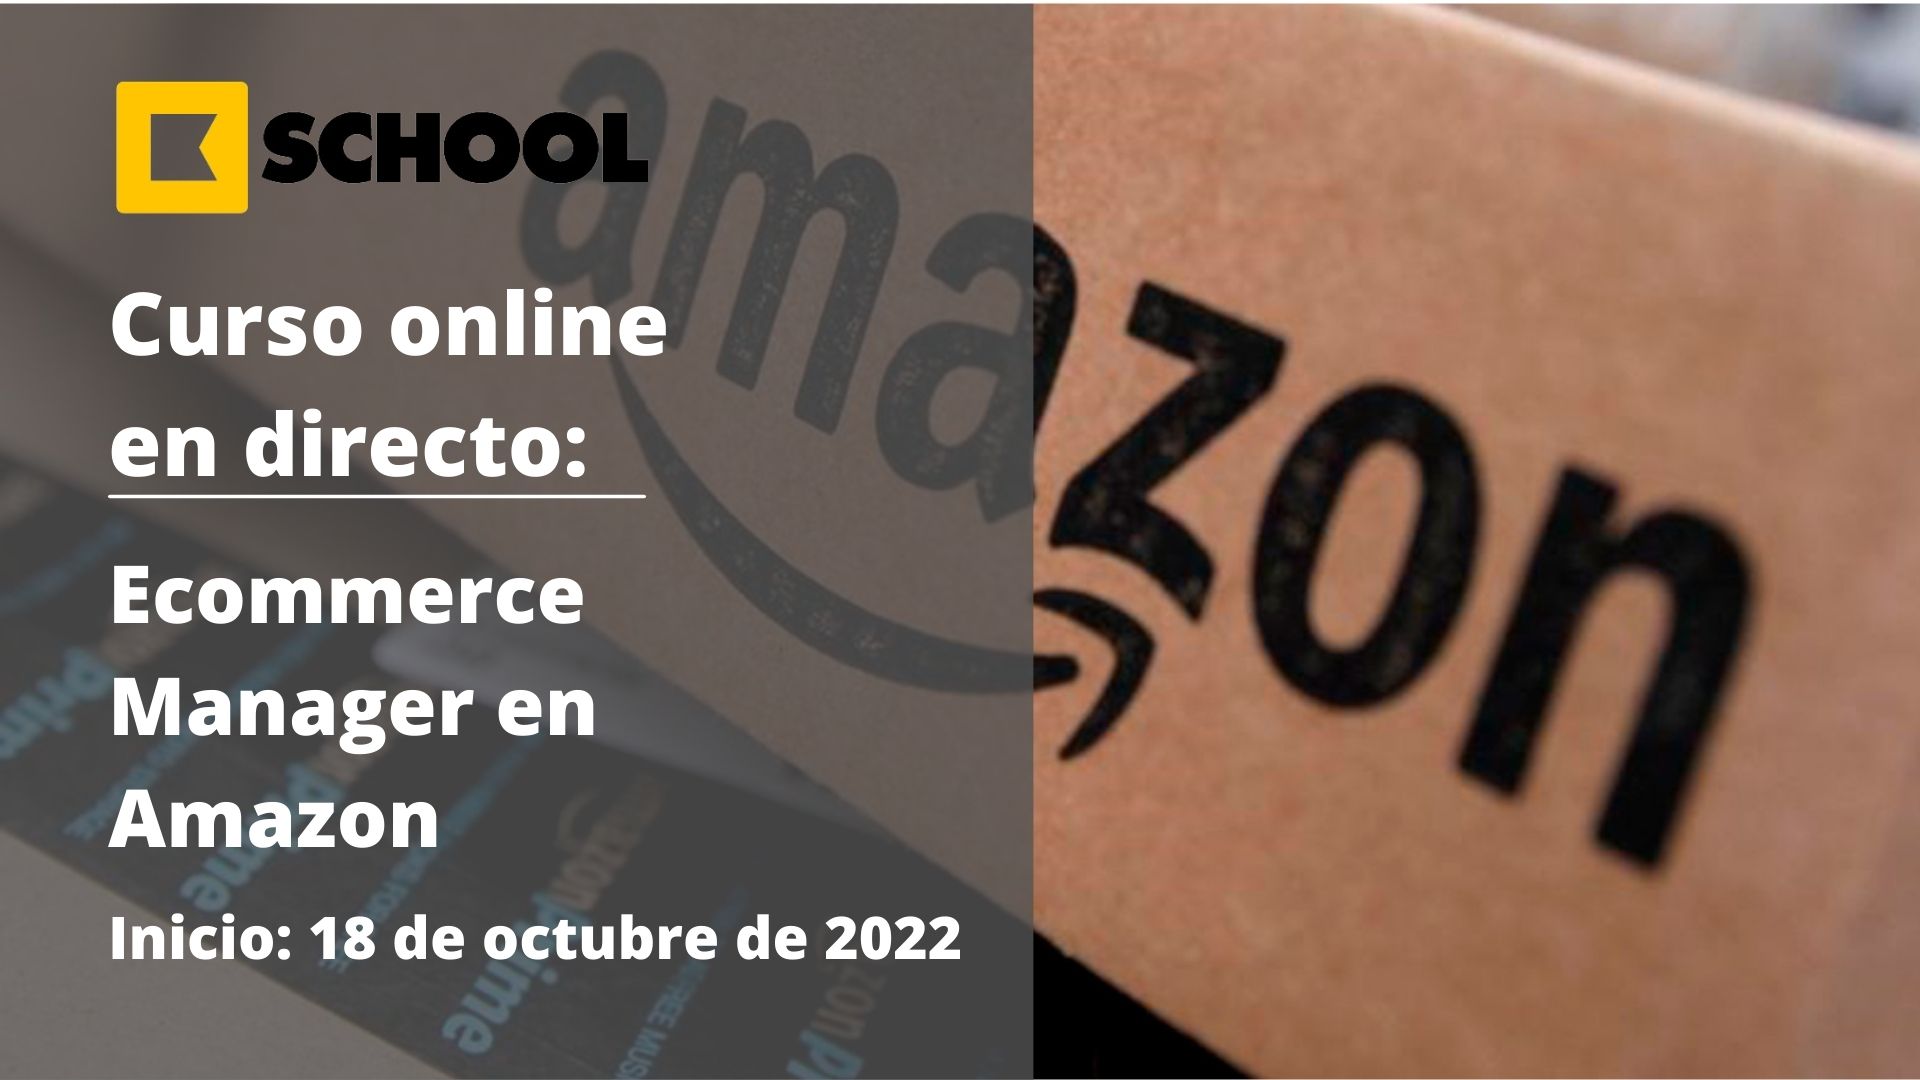 Curso e-commerce manager en Amazon | Kschool | Cámara de Comercio de Murcia